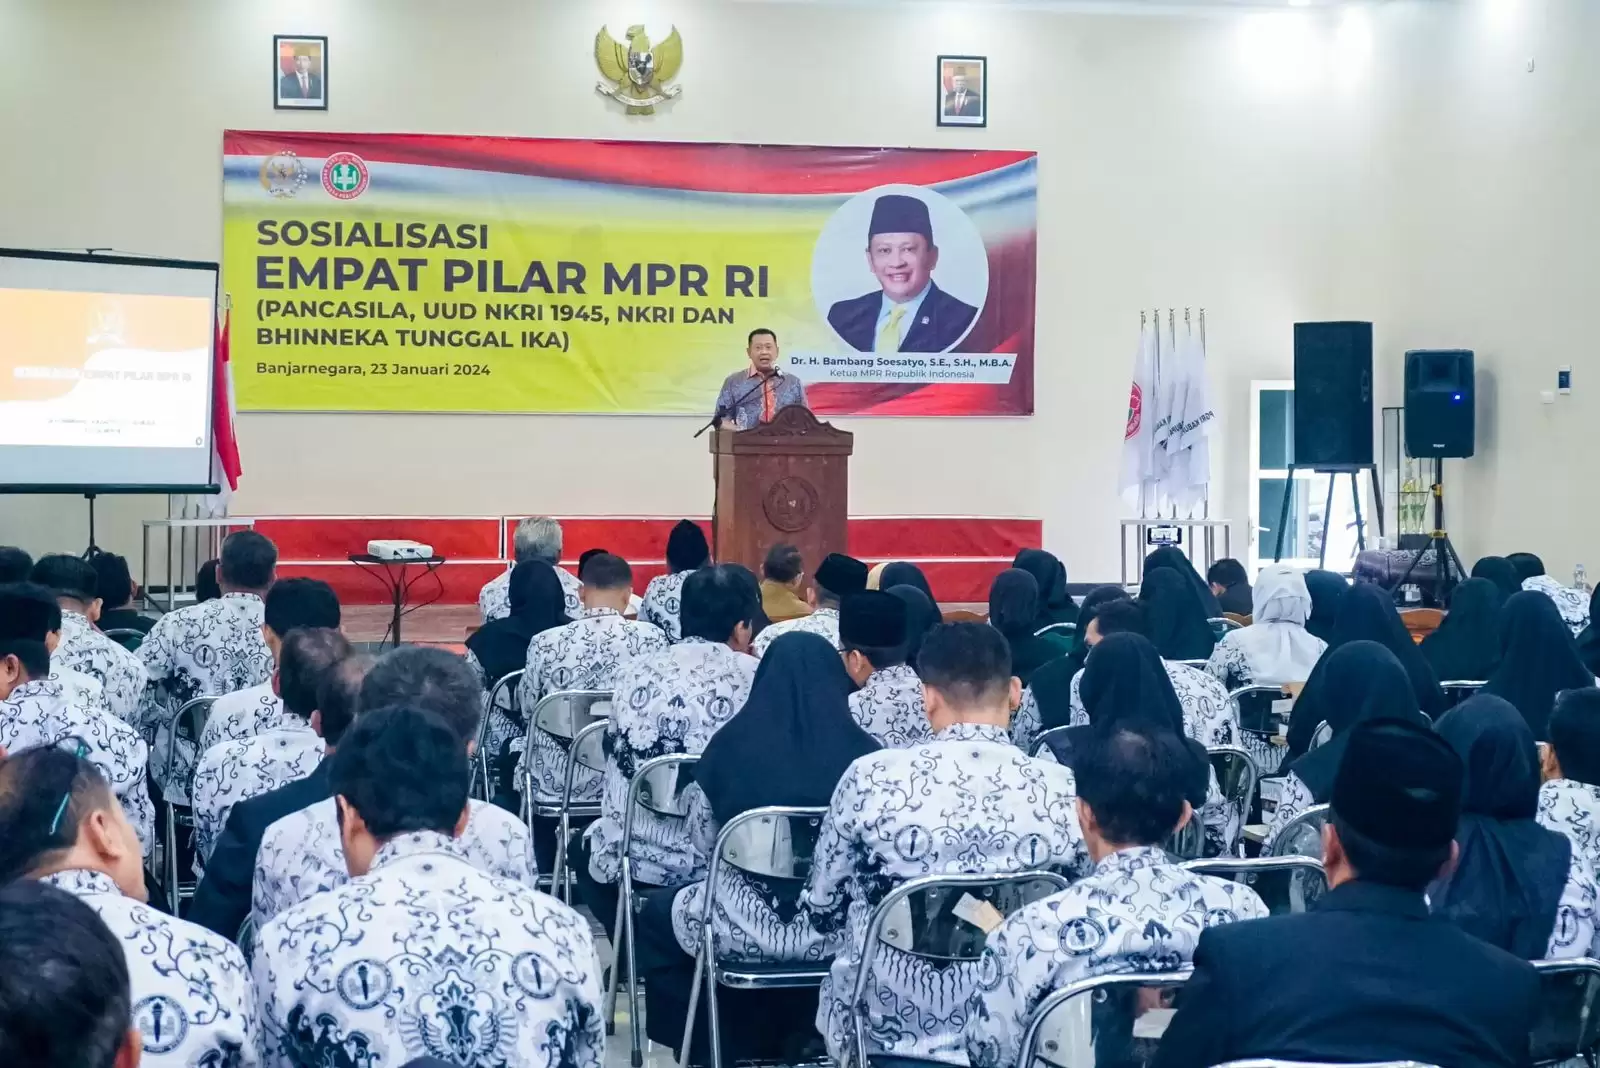 Ketua MPR RI, Bambang Soesatyo saat melakukan sosialisasi empat pilar (Foto: Ist)